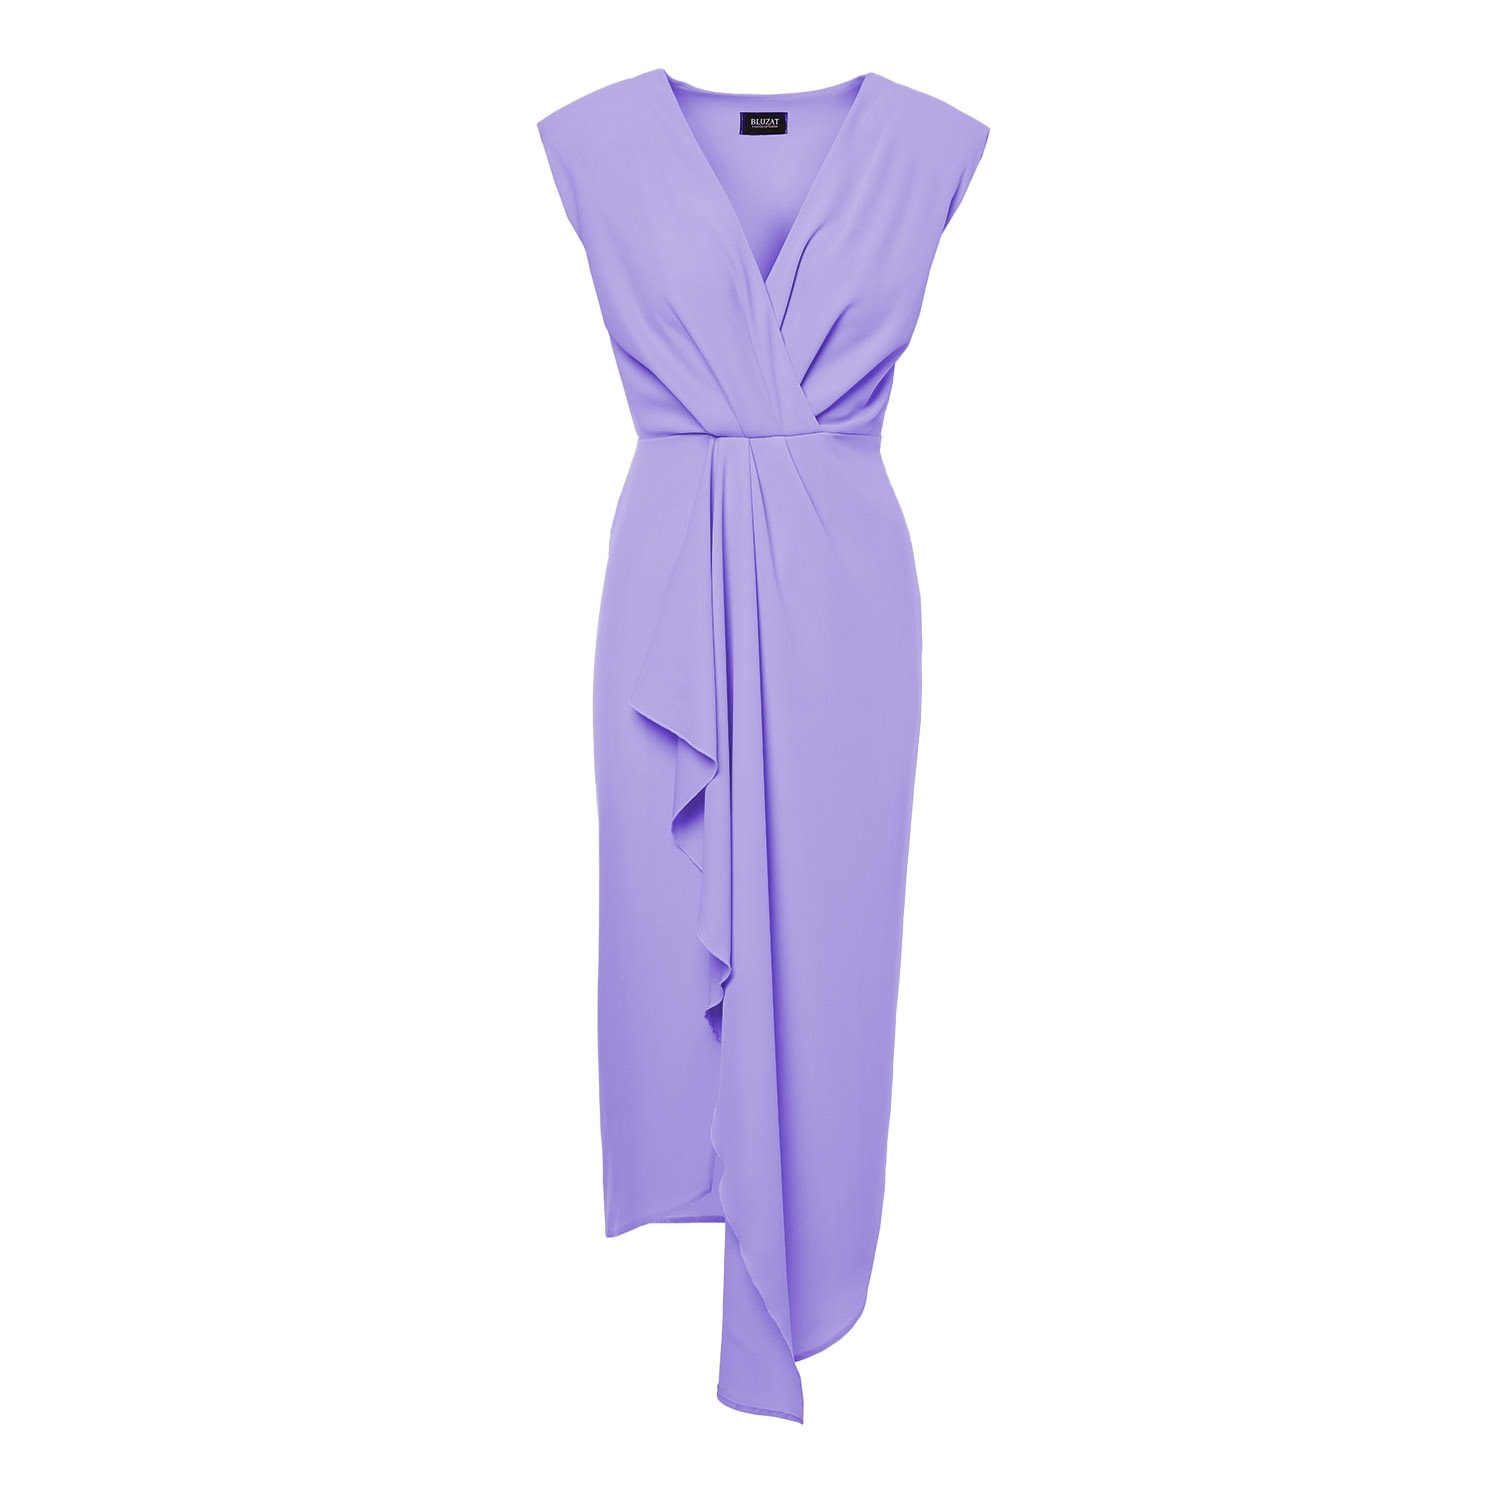 Women’s Pink / Purple Pastel Purple Midi Dress With Draping And Pleats Large Bluzat